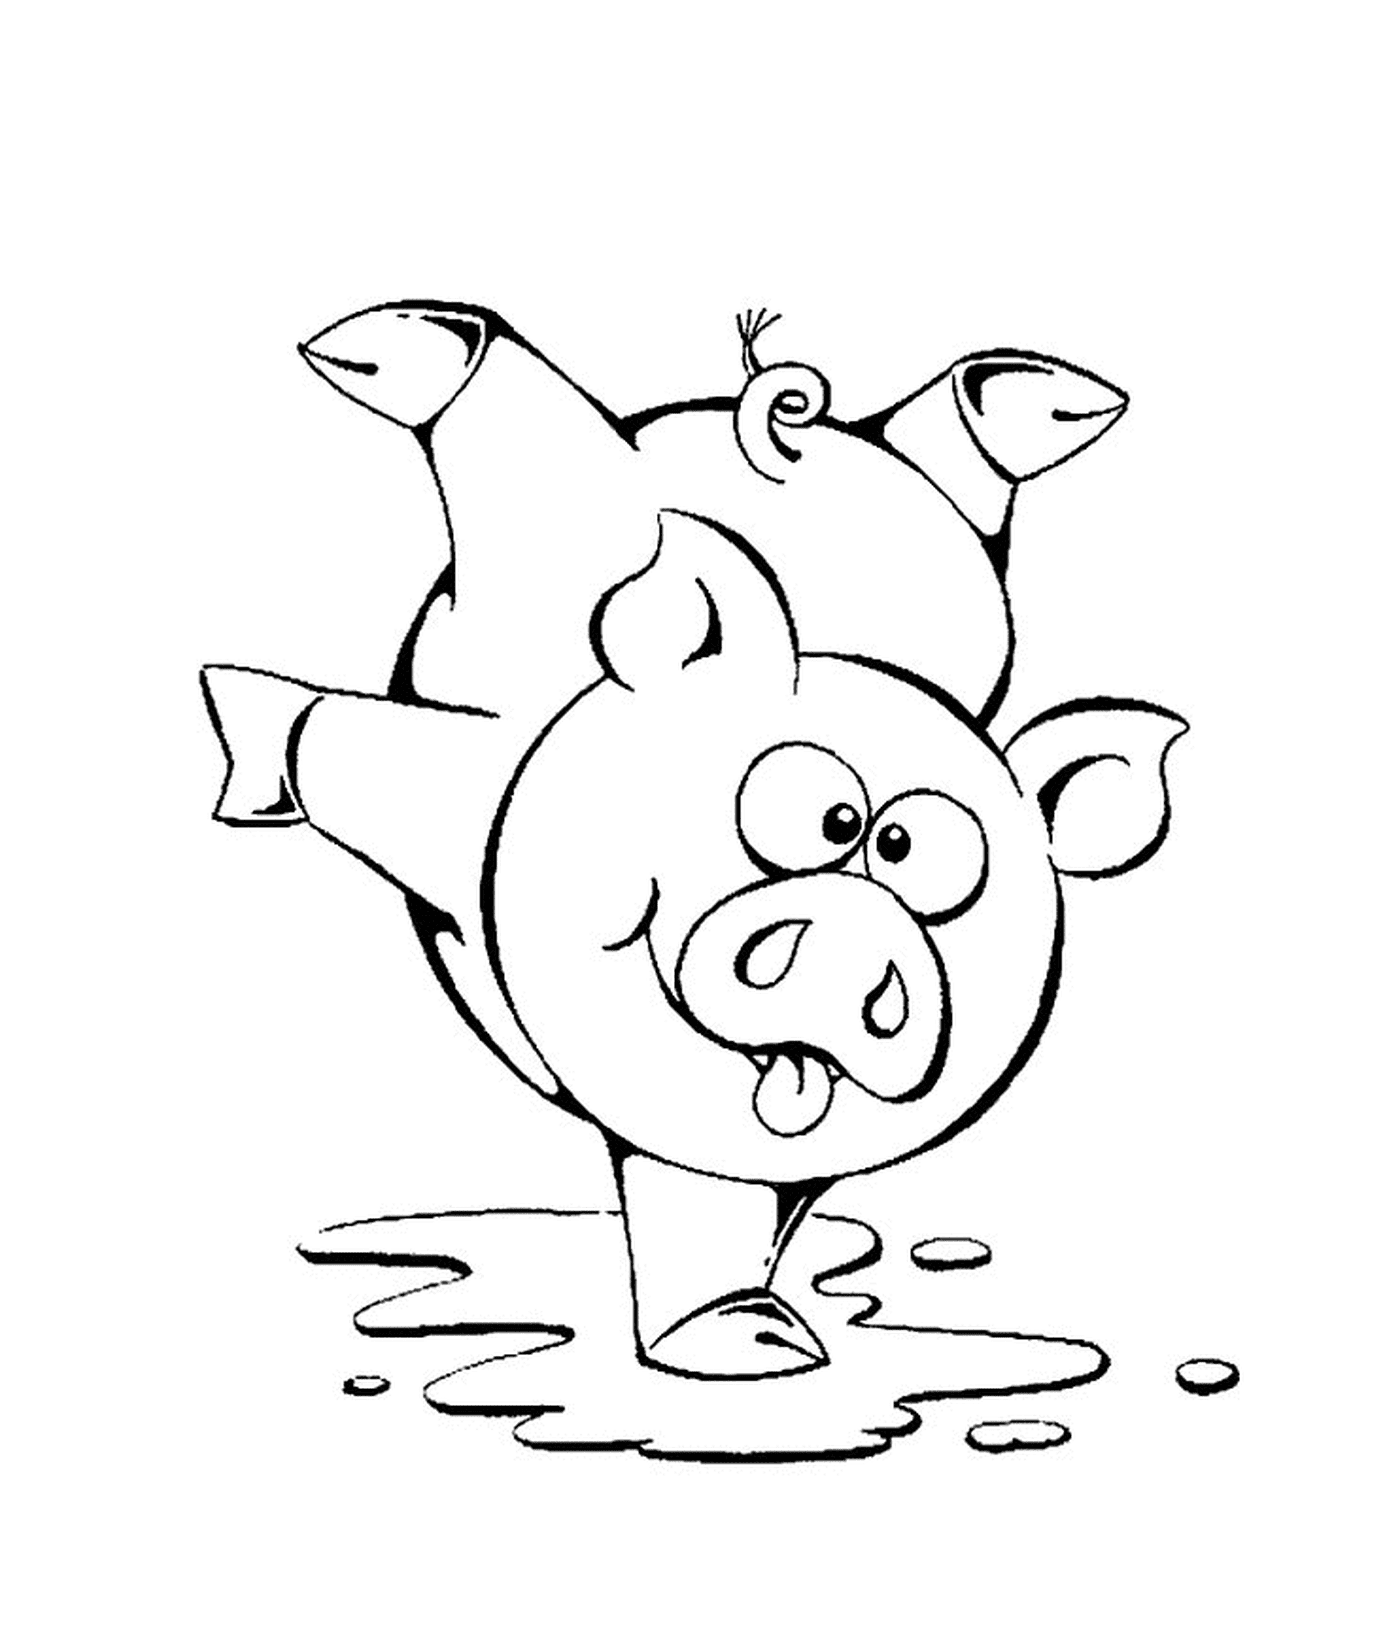  Un cerdo haciendo la pera 